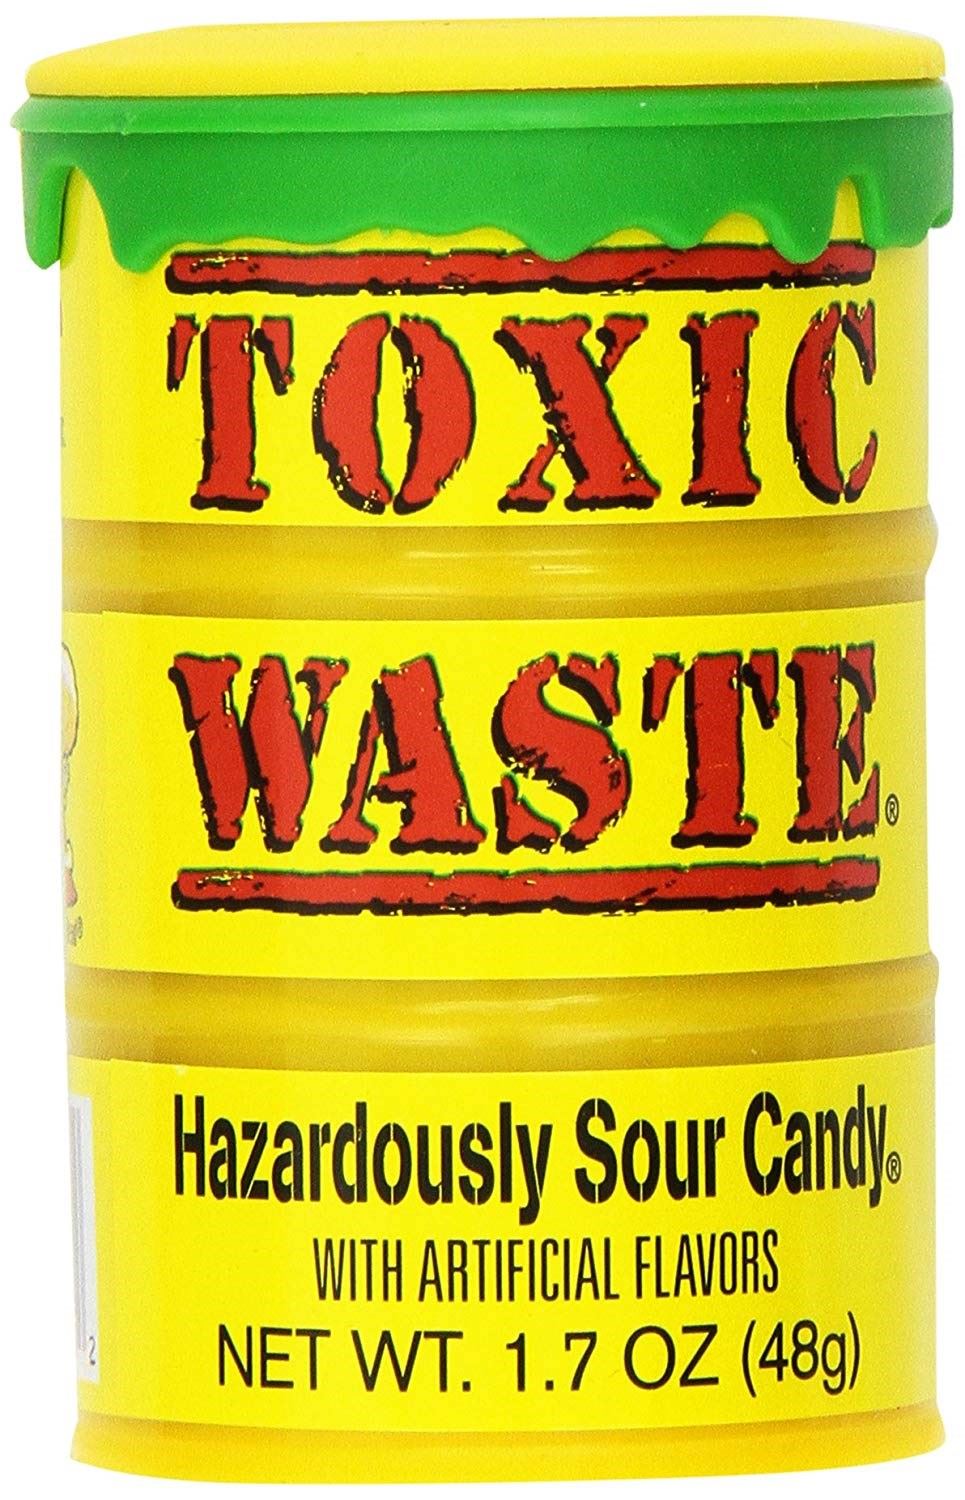 Toxic waste конфеты. Самые кислые конфеты в мире Toxic. Леденцы Toxic waste. Кислые конфеты Toxic waste. Сколько стоит токсик